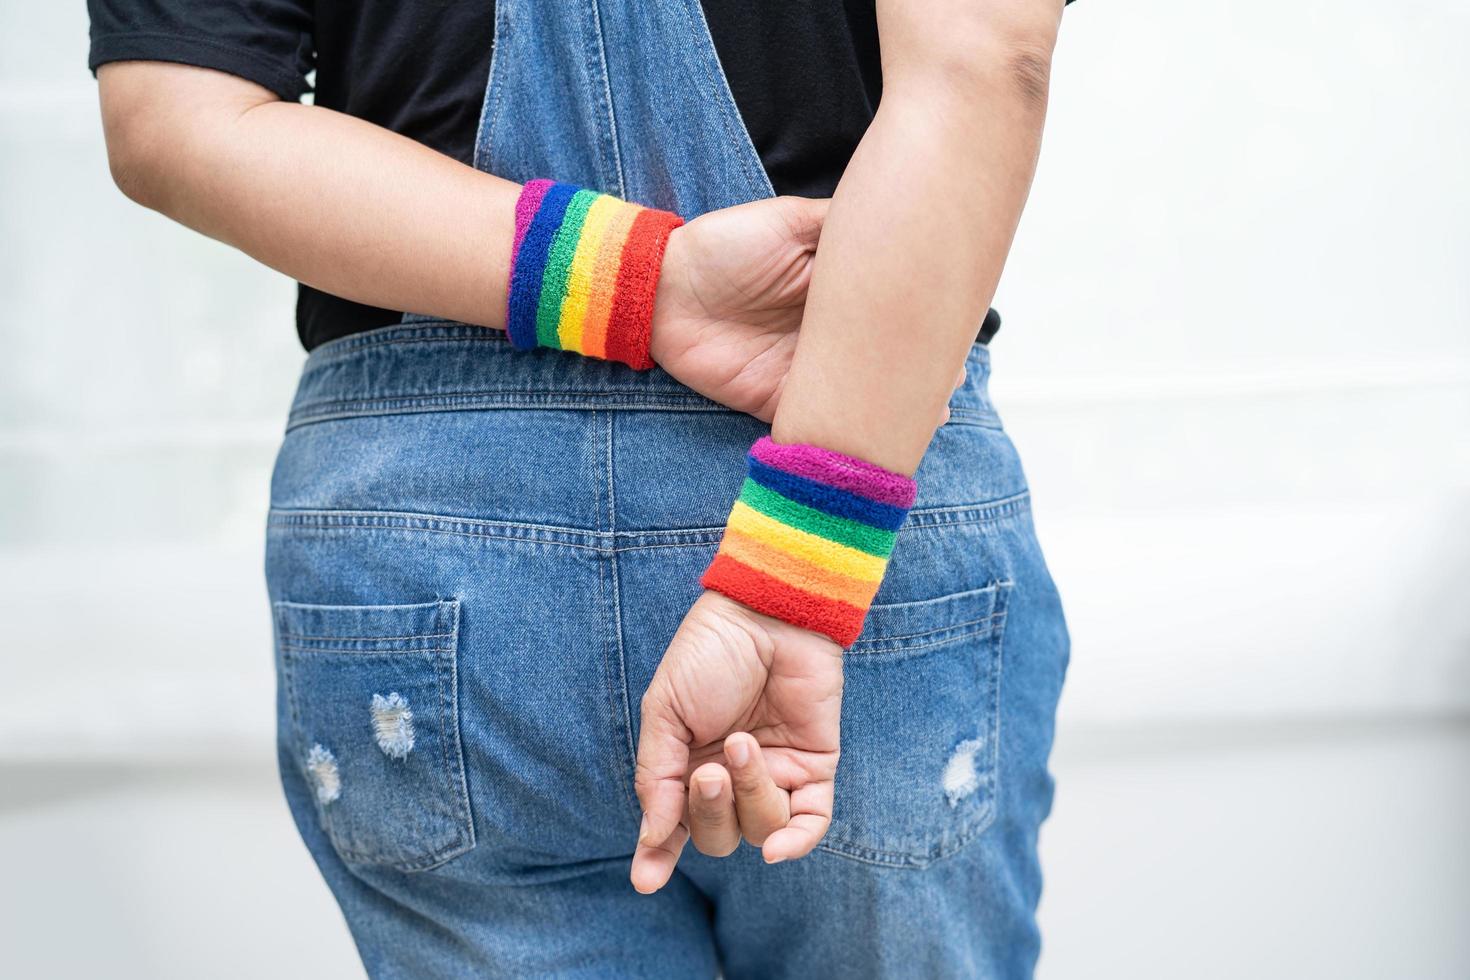 senhora asiática usando pulseiras com bandeira do arco-íris, símbolo do mês do orgulho LGBT, comemora anualmente em junho social de gays, lésbicas, bissexuais, transgêneros, direitos humanos foto